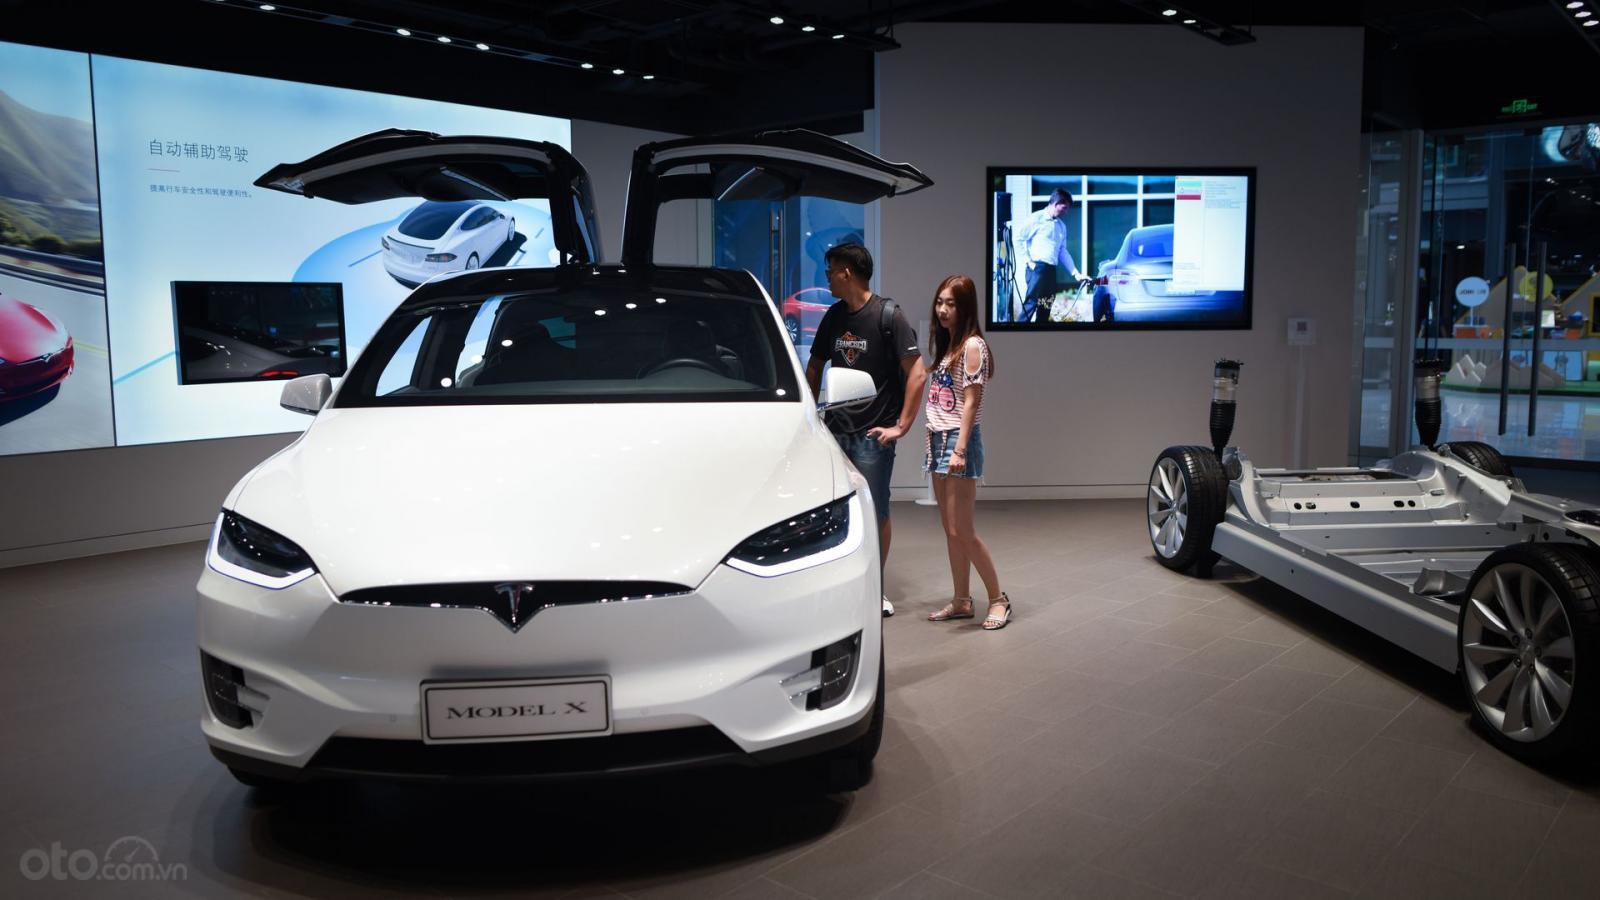 Tesla sản xuất tại Thượng Hải tránh thuế nhập từ Mỹ